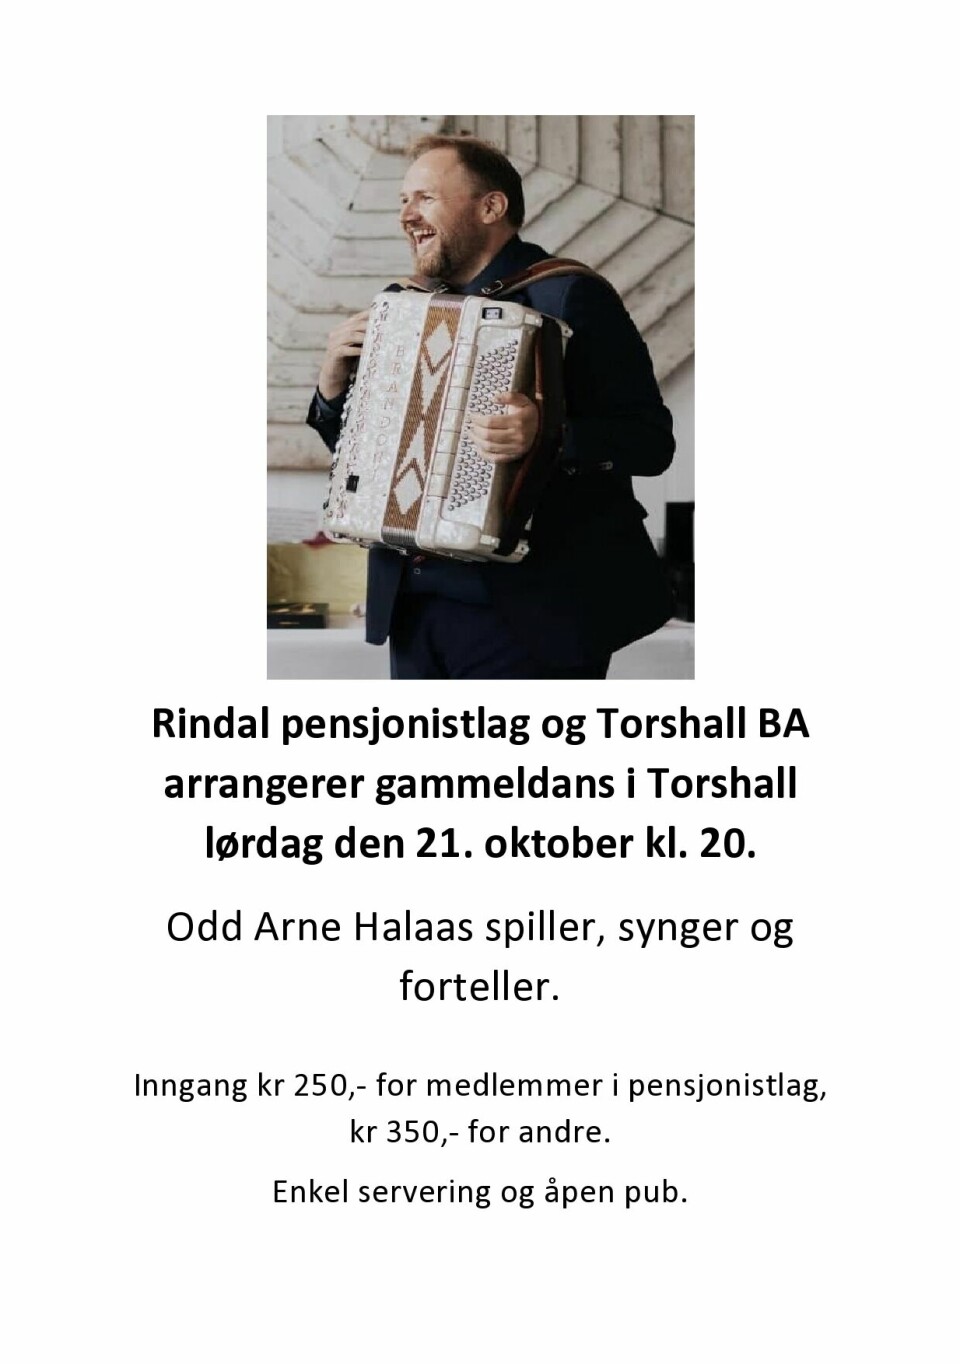 En plakat for fest på Torshall lørdag 21. oktober klokken 20.00